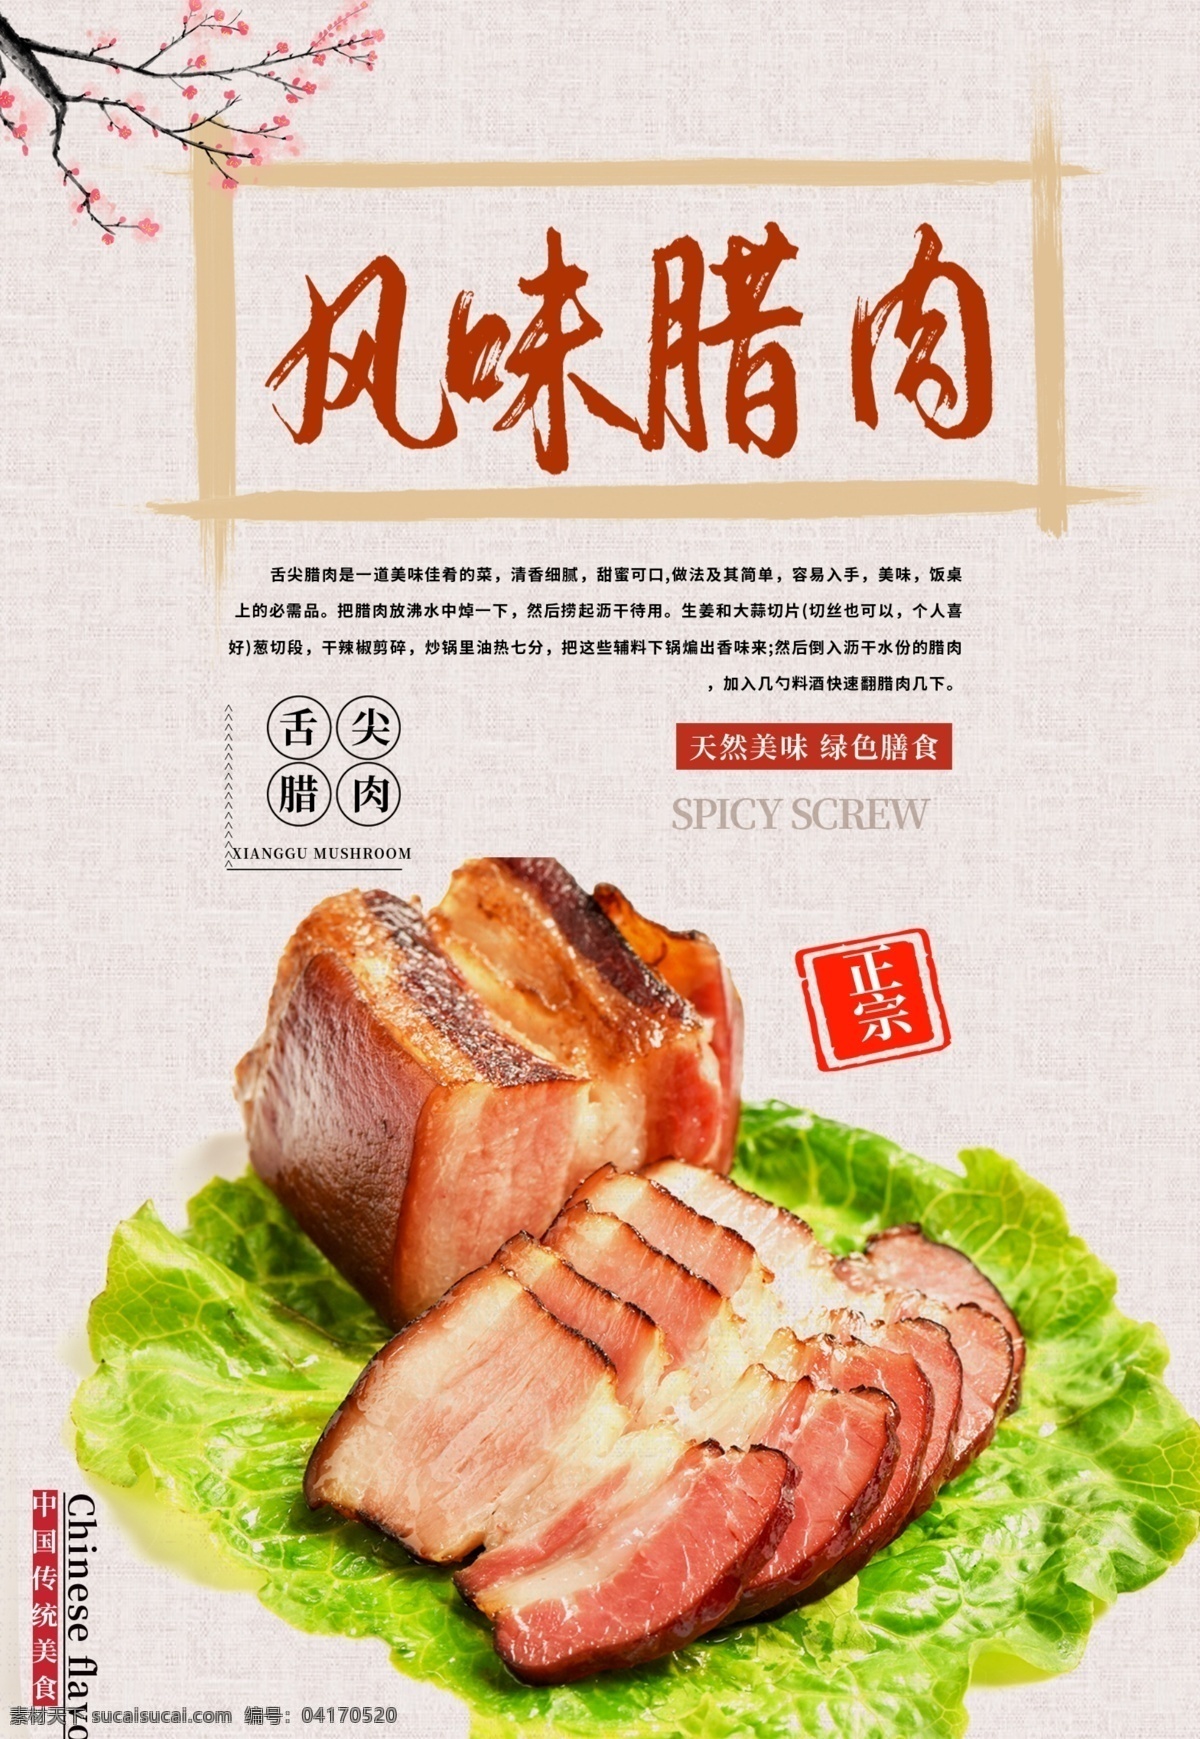 风味 腊肉 美食 海报 传统美食 腊肉海报 正宗腊肉 精品腊肉 美味腊肉 优质腊肉 天然腊肉 风味腊肉 分层